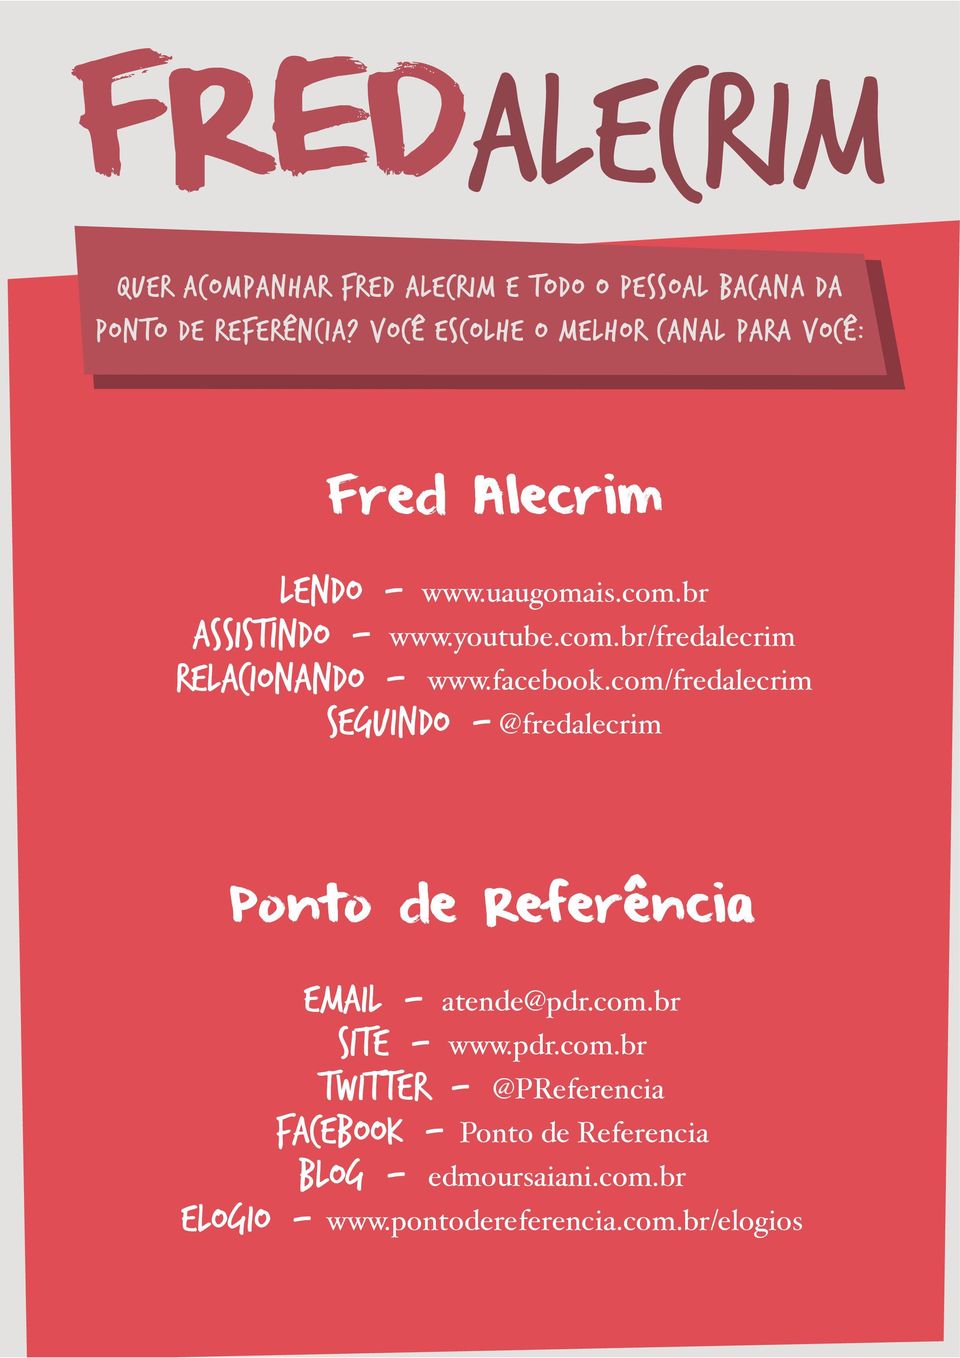 facebook.com/fredalecrim Seguindo - @fredalecrim Ponto de Referência Email - atende@pdr.com.br Site - www.pdr.com.br Twitter - @PReferencia Facebook - Ponto de Referencia Blog - edmoursaiani.